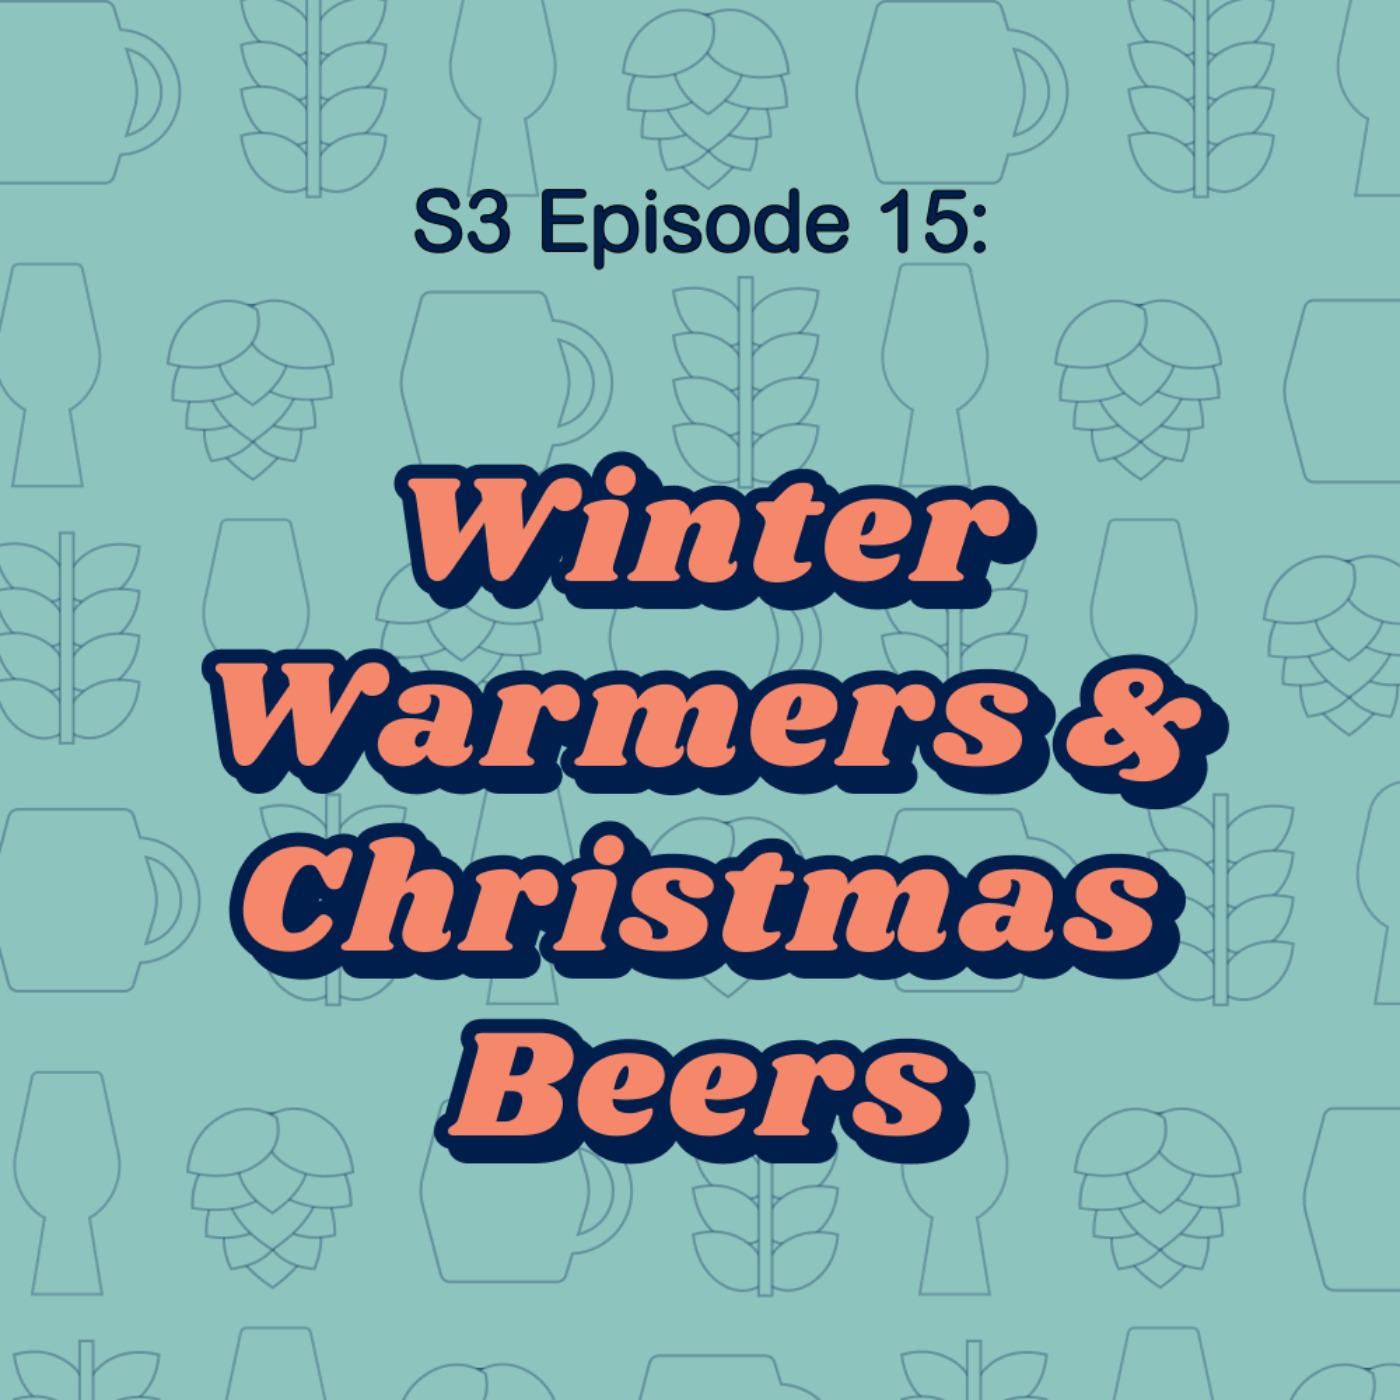 Winter Warmers & Christmas Beers